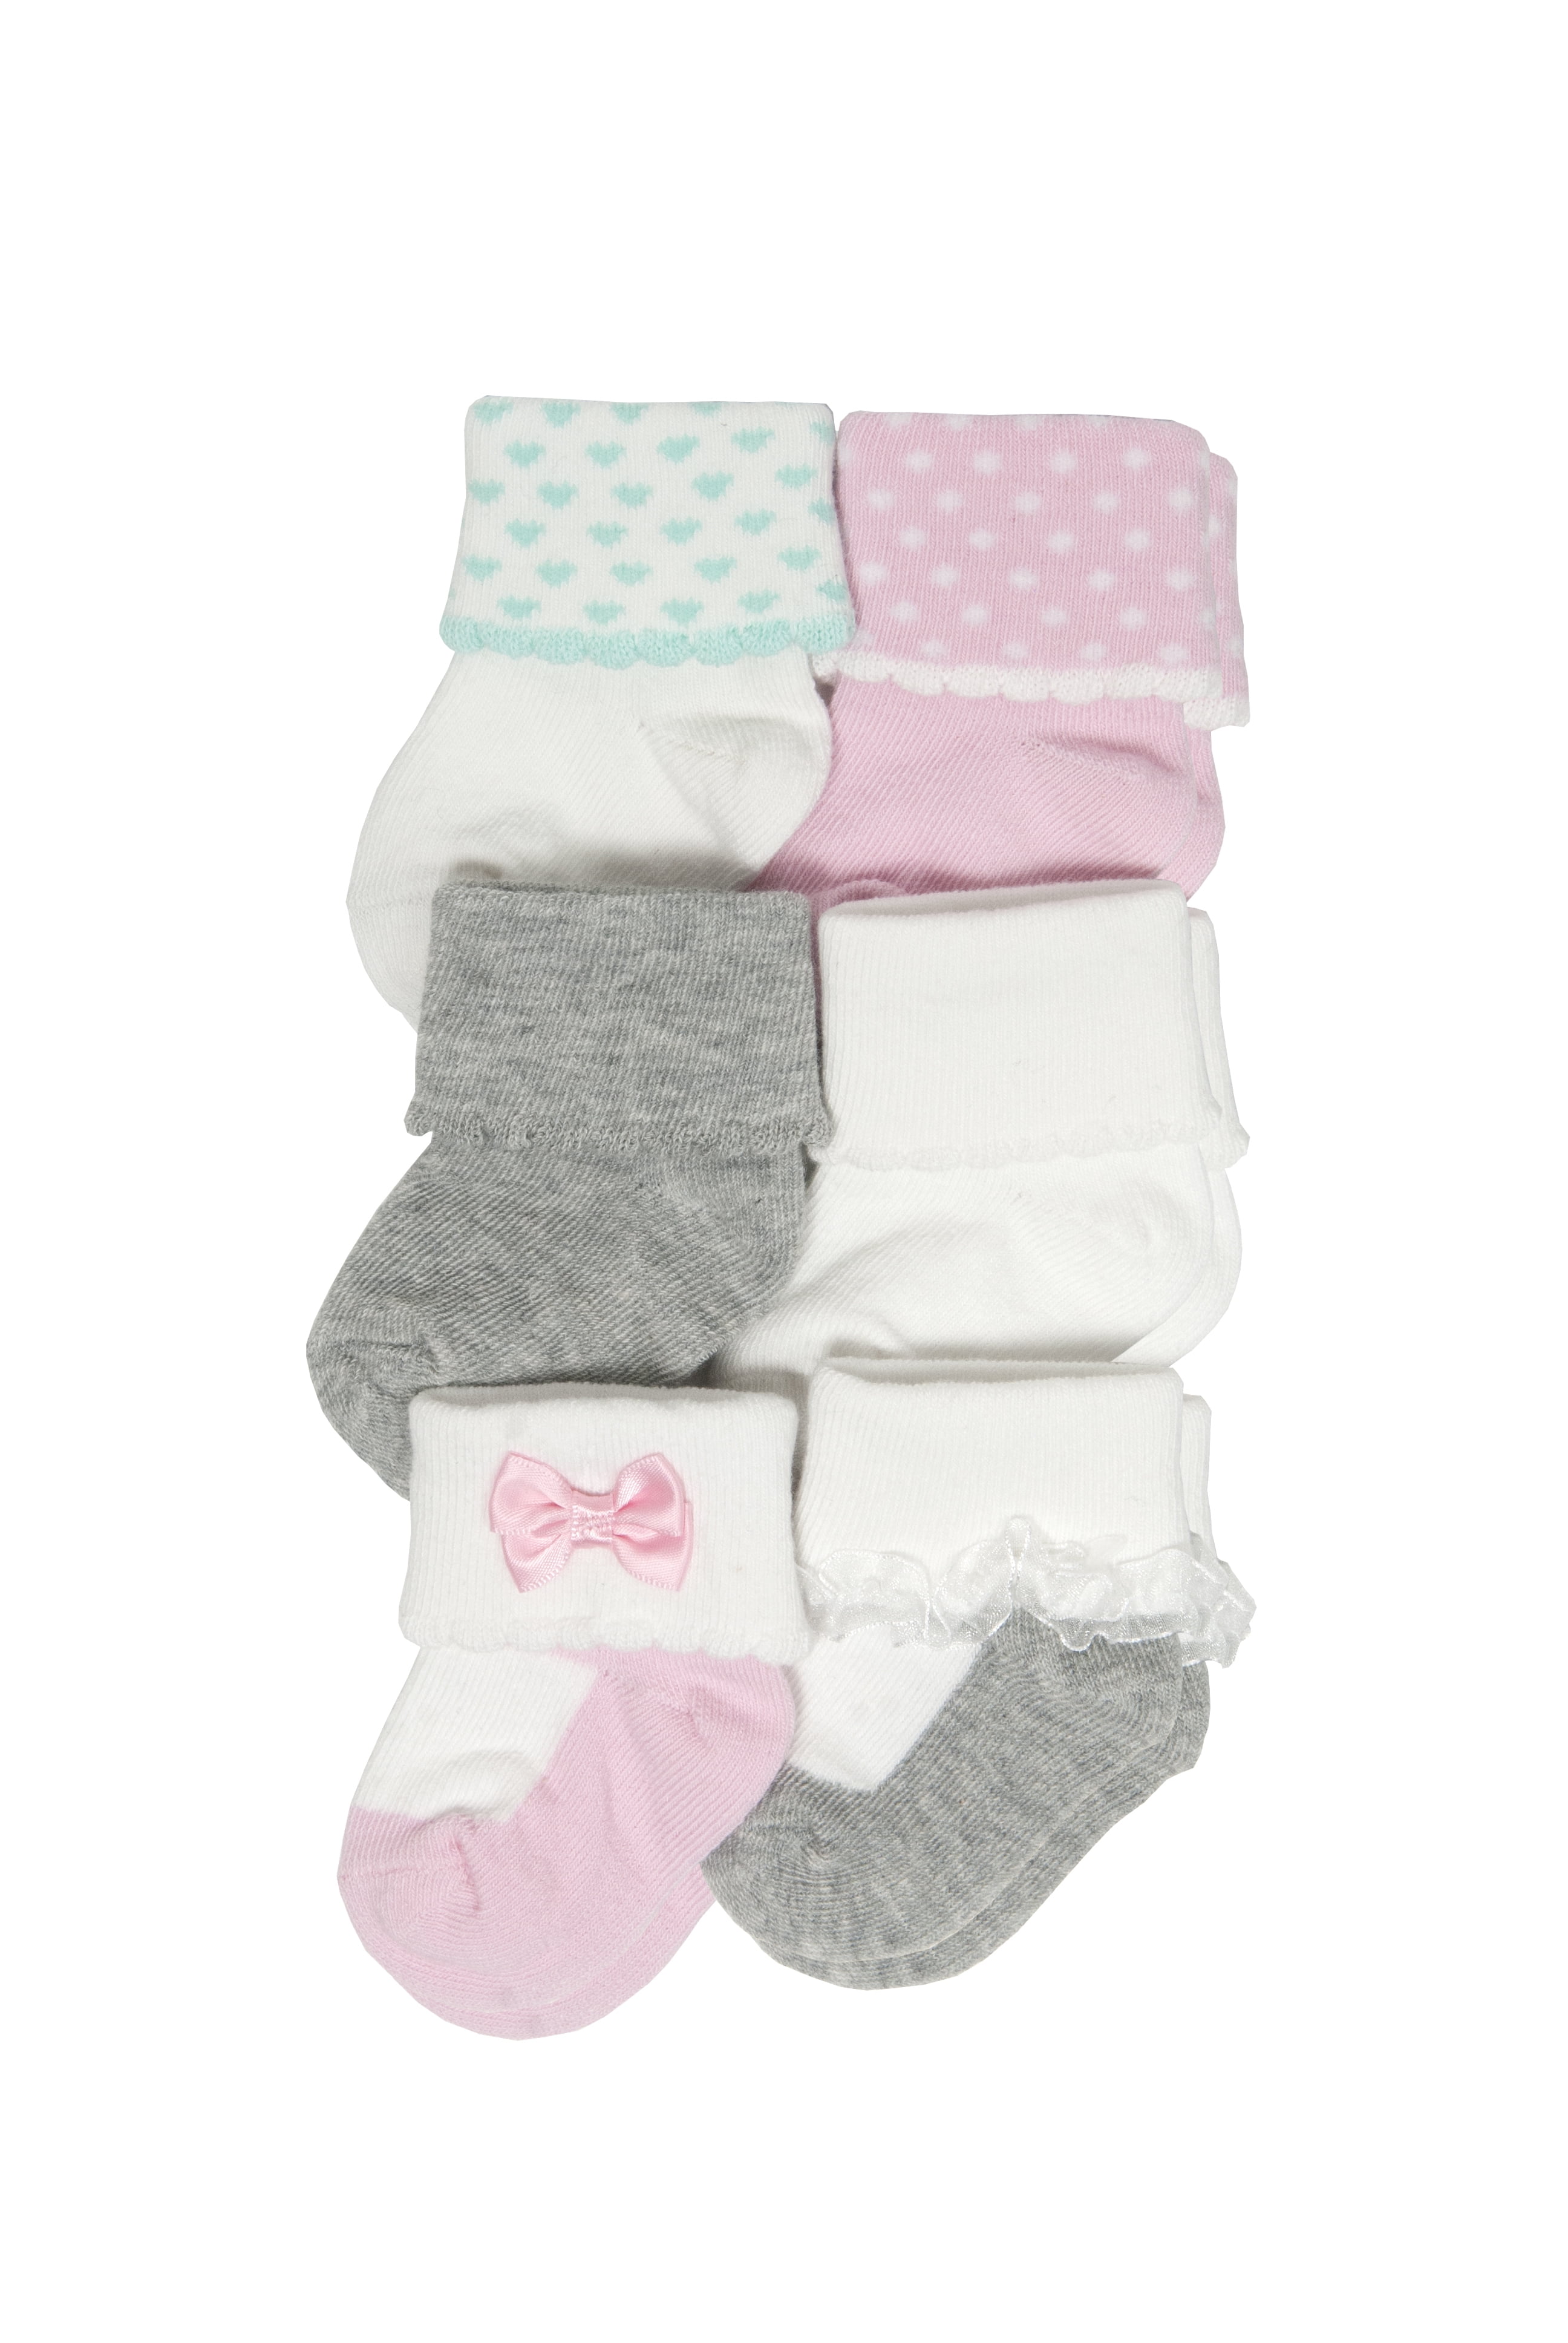 newborn mary jane socks